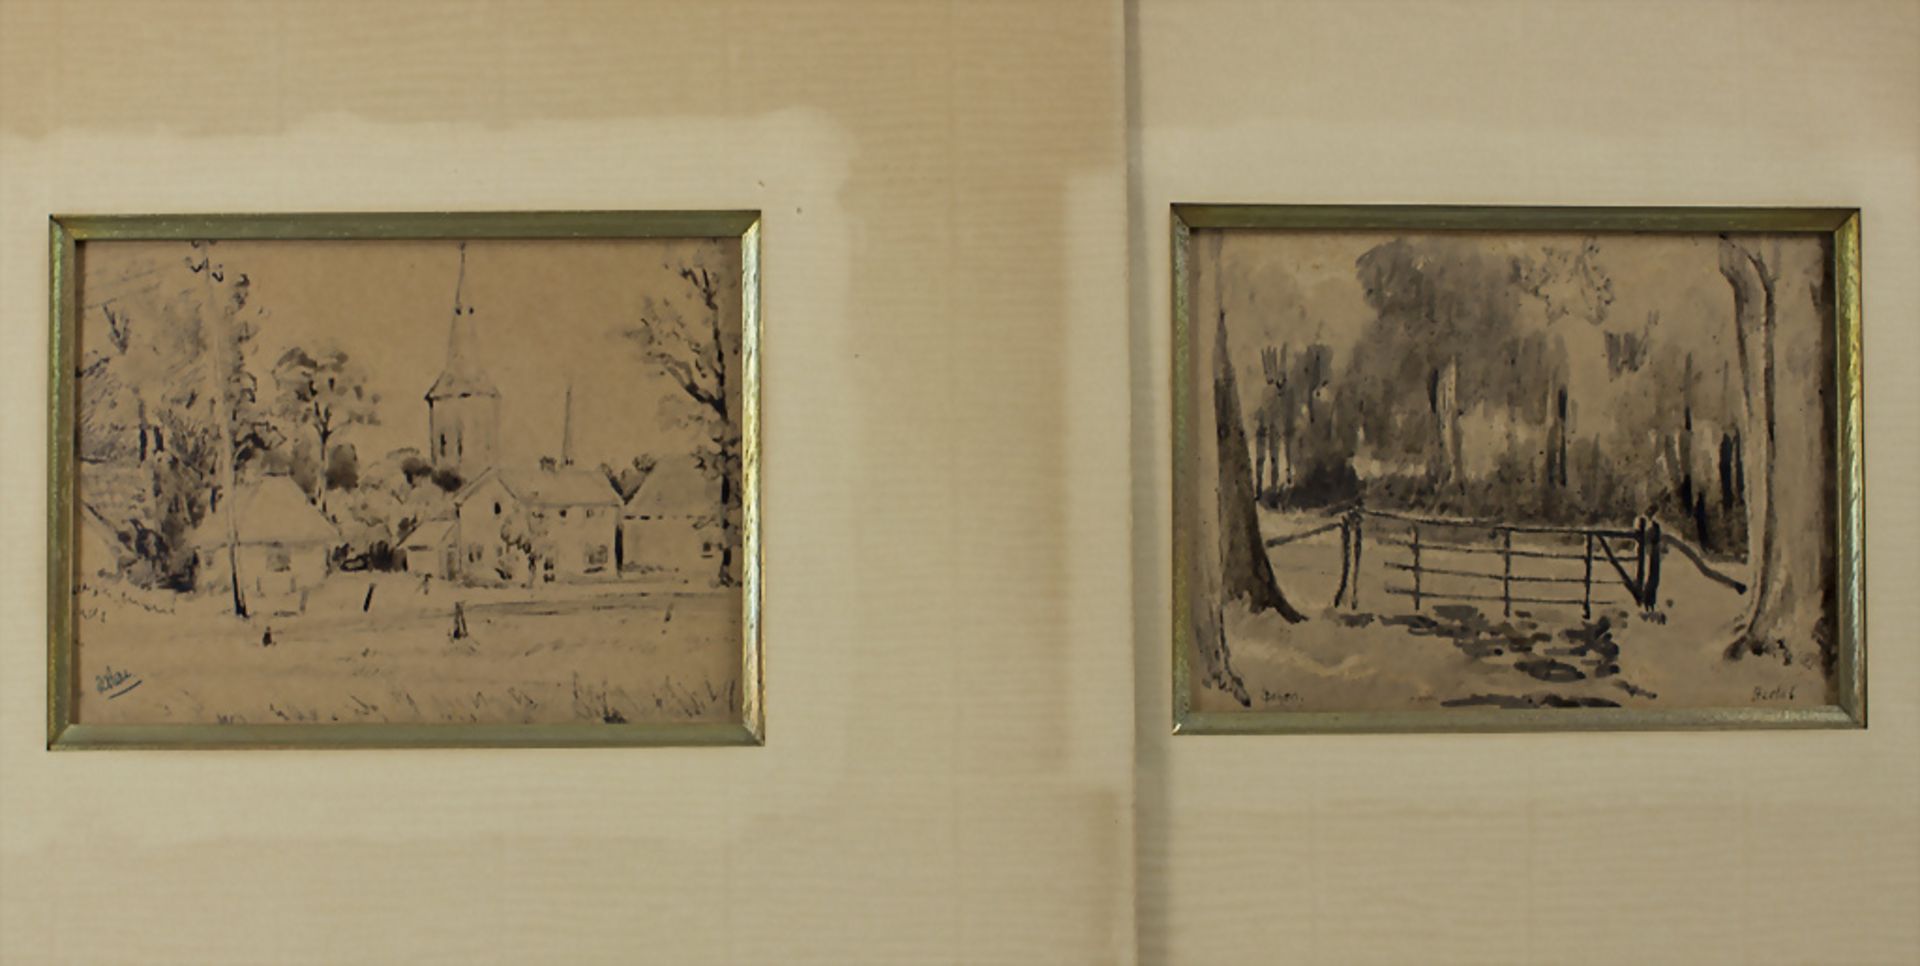 Künstler des 20. Jh., 2 Blätter mit ländlichen Szenen / Two sheets with rural scenes